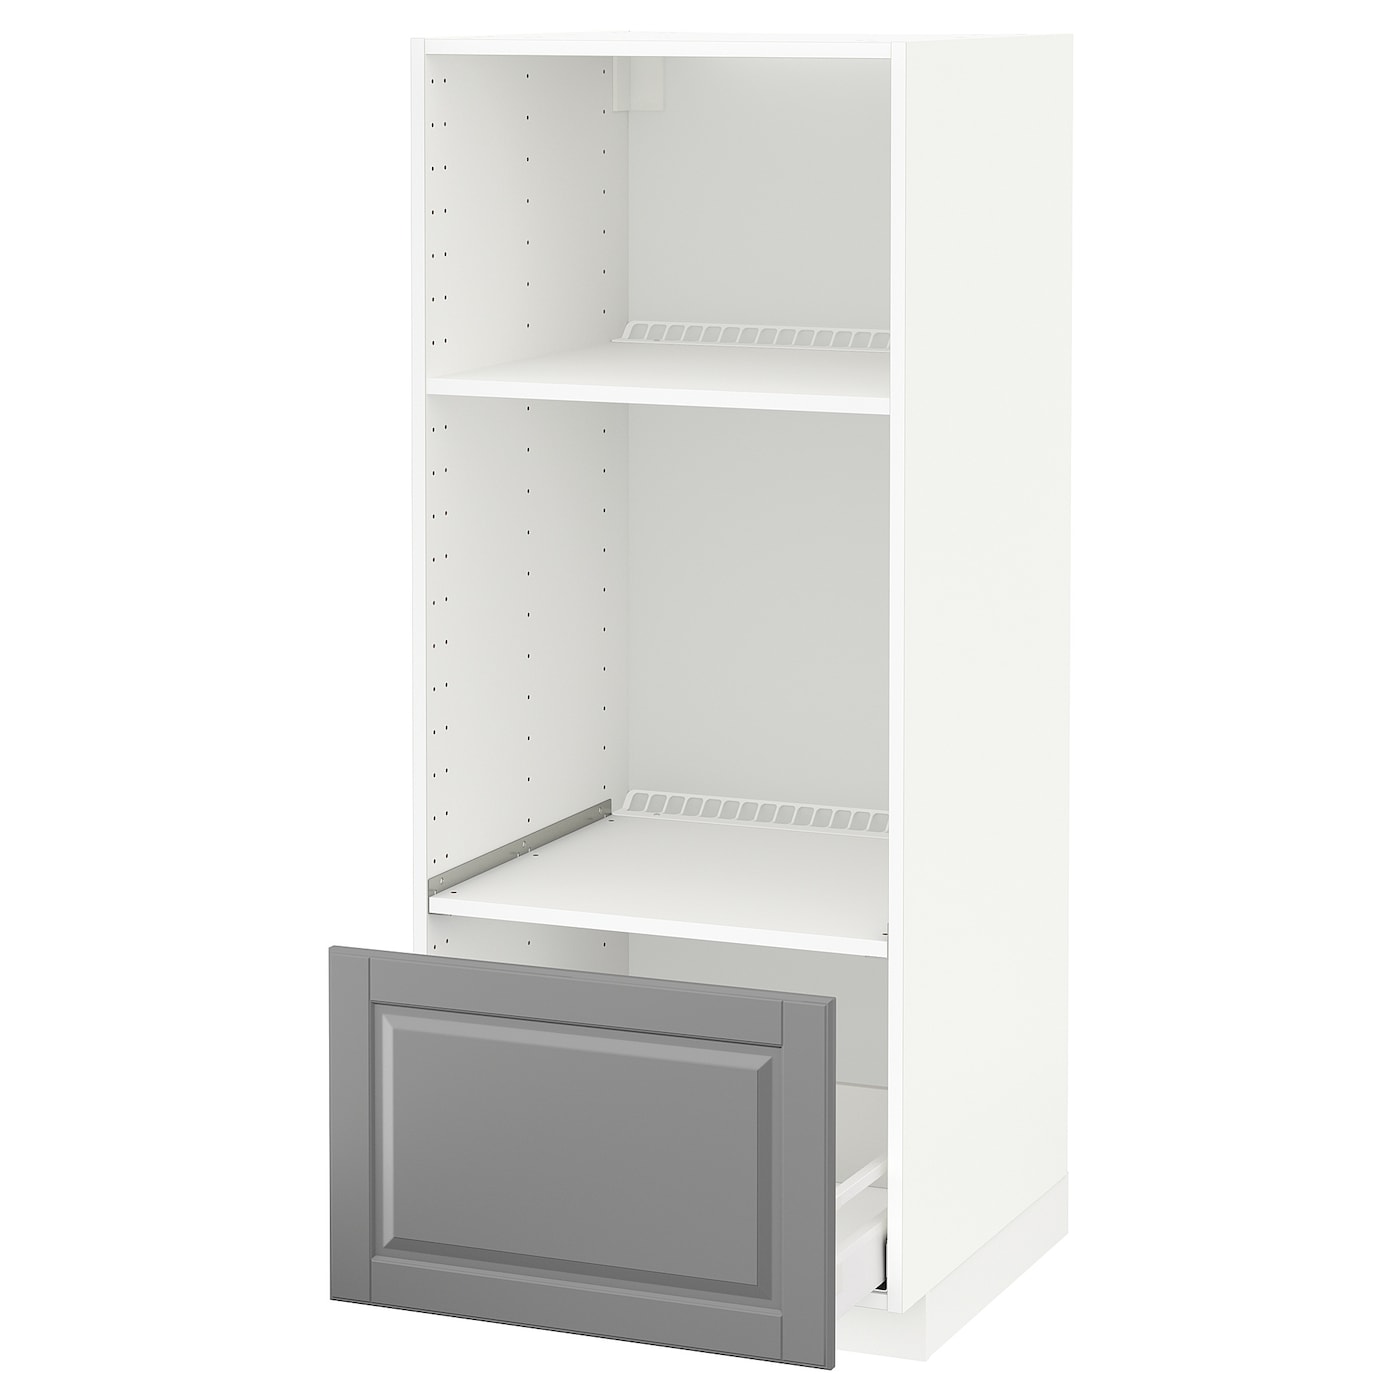 Напольный шкаф  - IKEA METOD MAXIMERA, 148x61,9x60см, белый/серый, МЕТОД МАКСИМЕРА ИКЕА